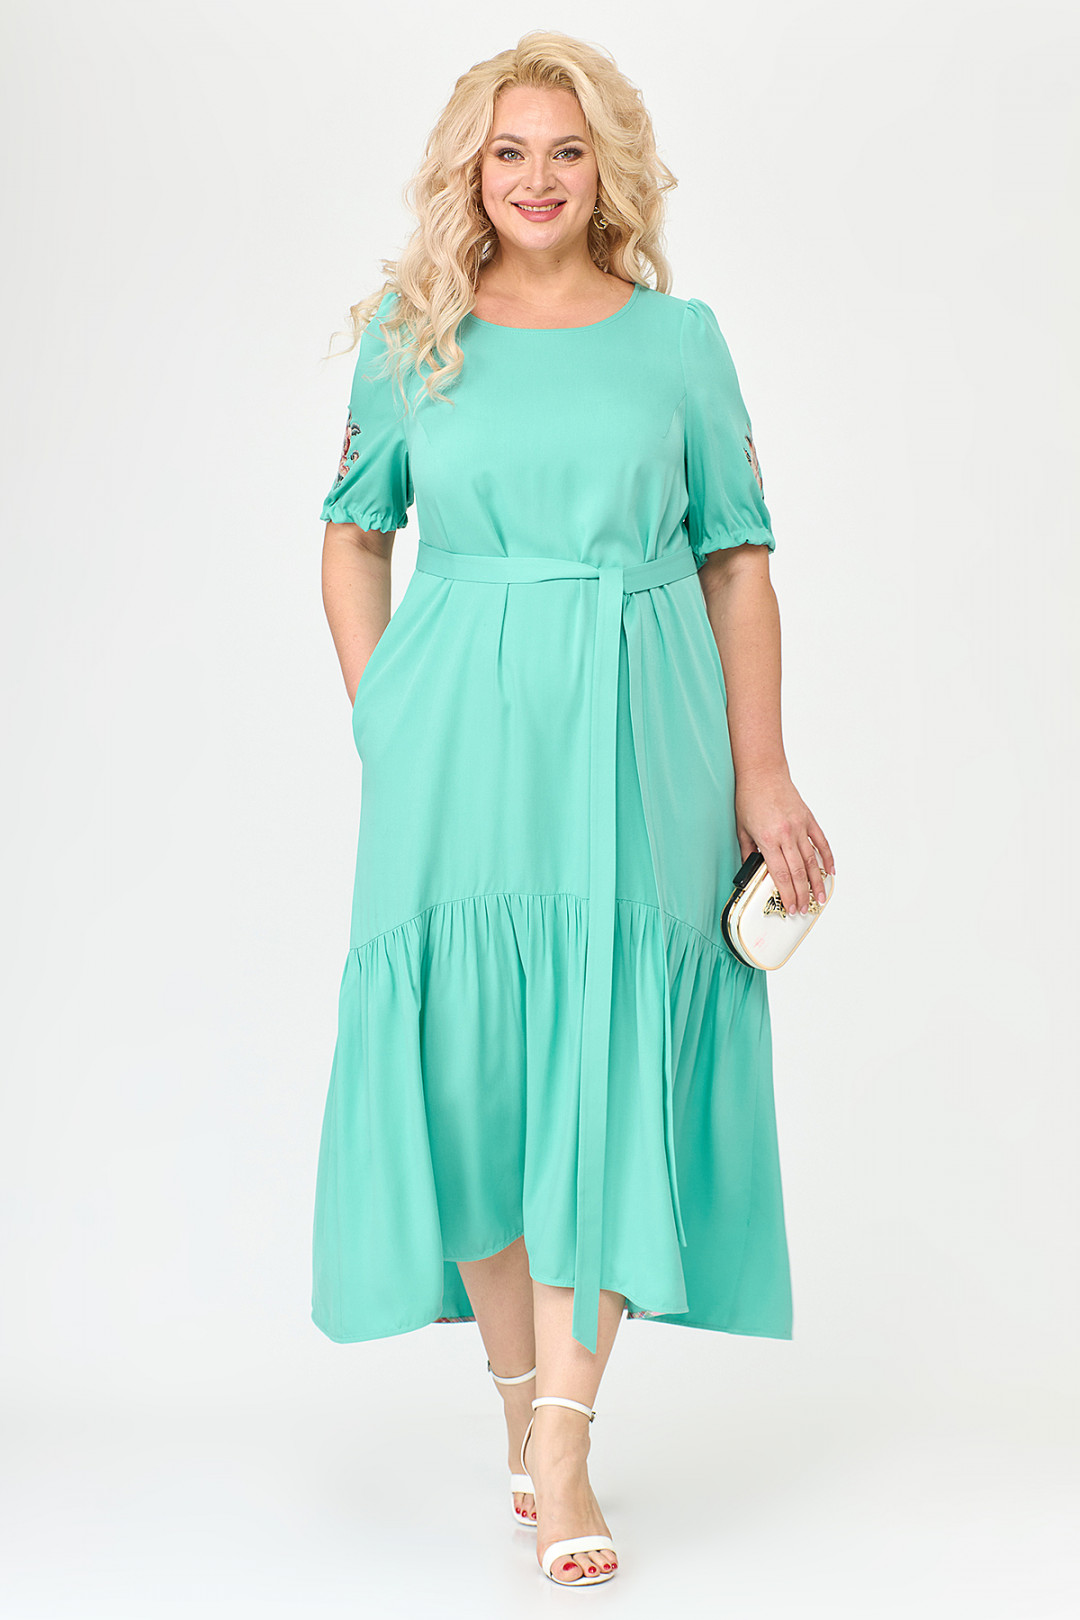 Платье ALGRANDA (Новелла Шарм) A3730-4-4-2